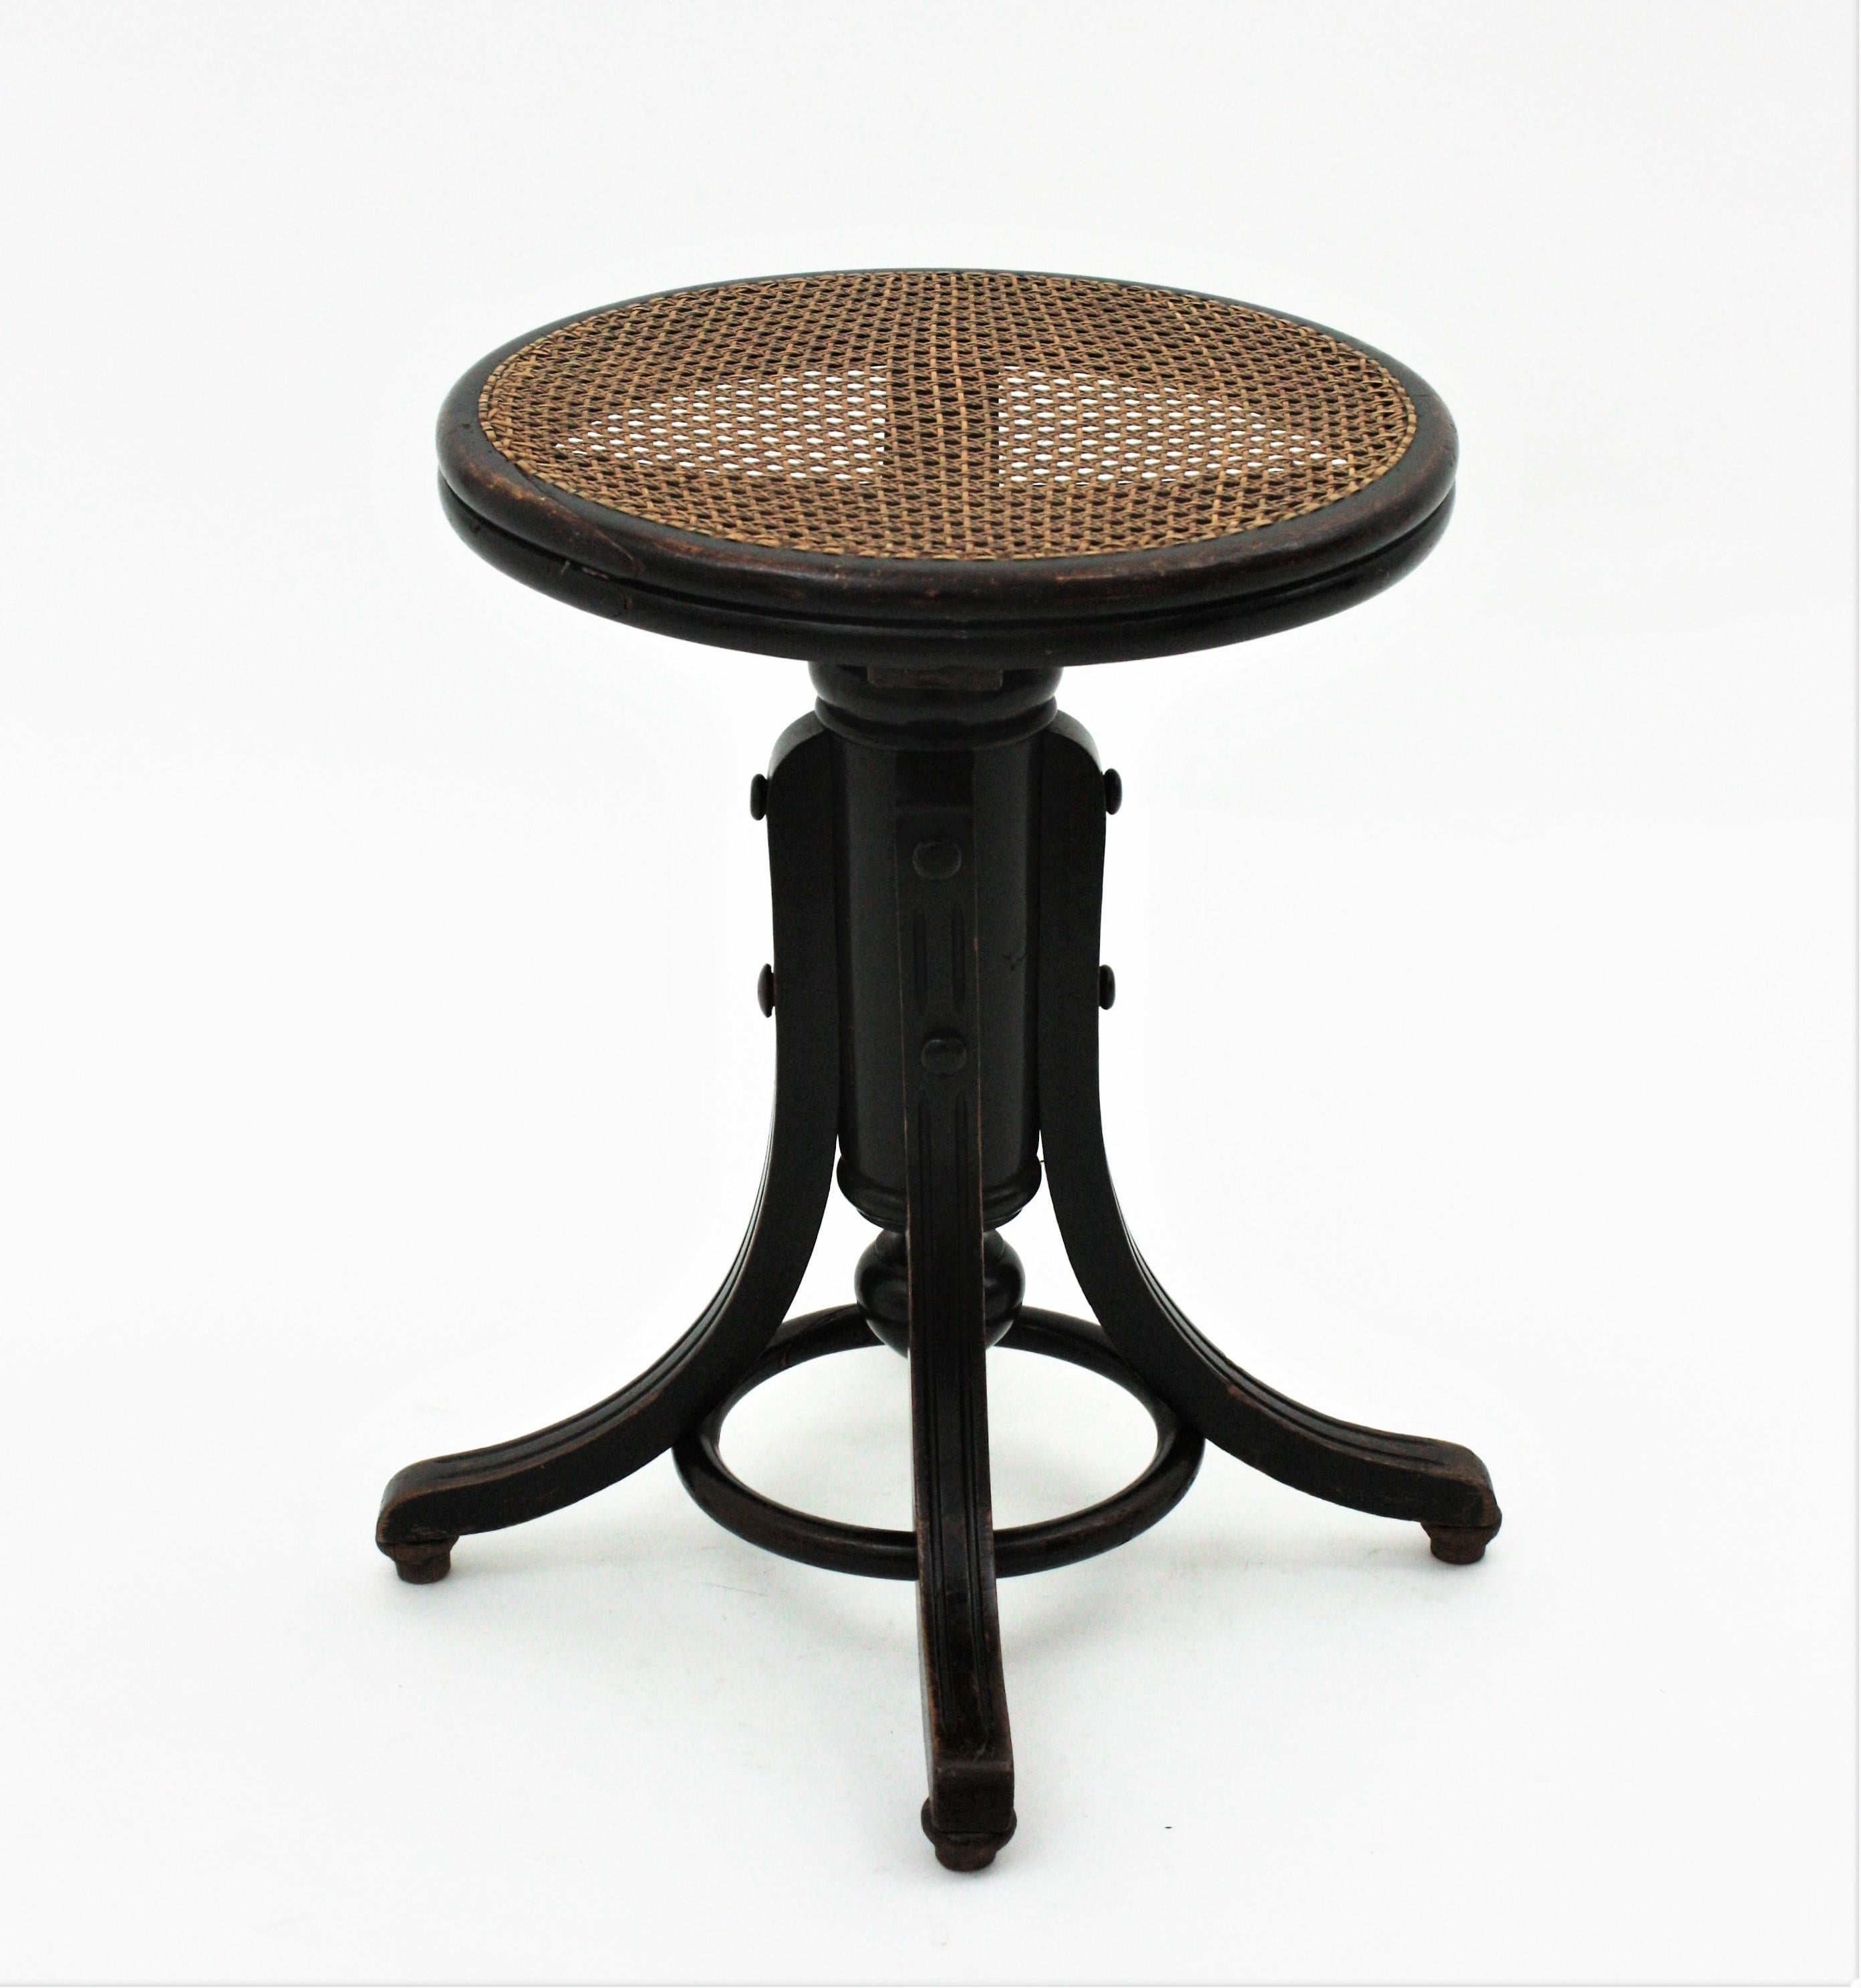 cane seat stool